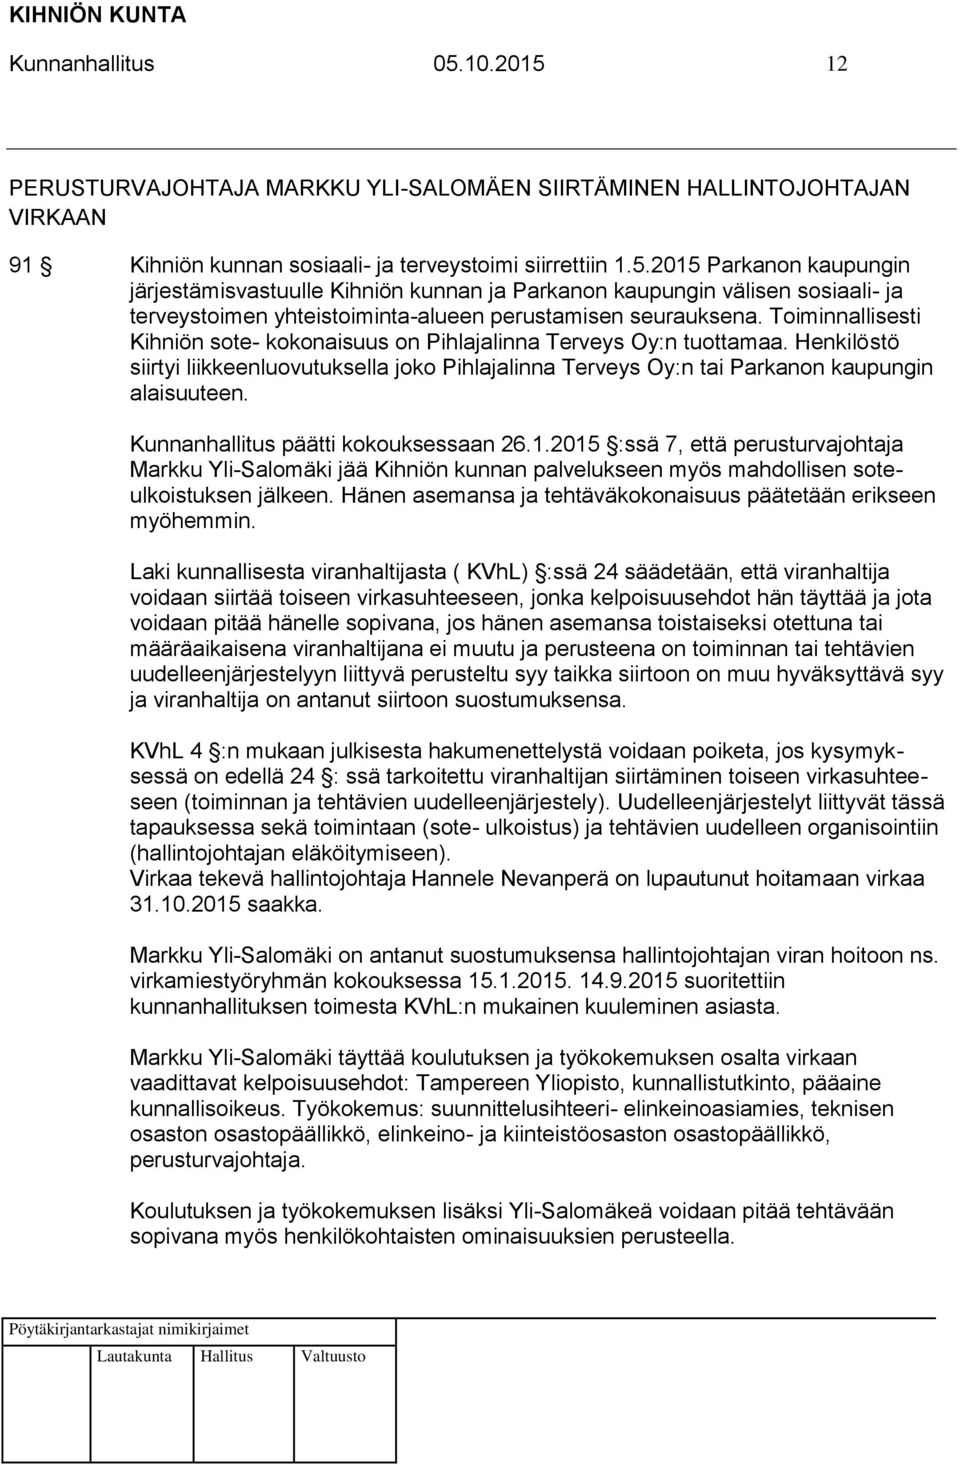 Kunnanhallitus päätti kokouksessaan 26.1.2015 :ssä 7, että perusturvajohtaja Markku Yli-Salomäki jää Kihniön kunnan palvelukseen myös mahdollisen soteulkoistuksen jälkeen.